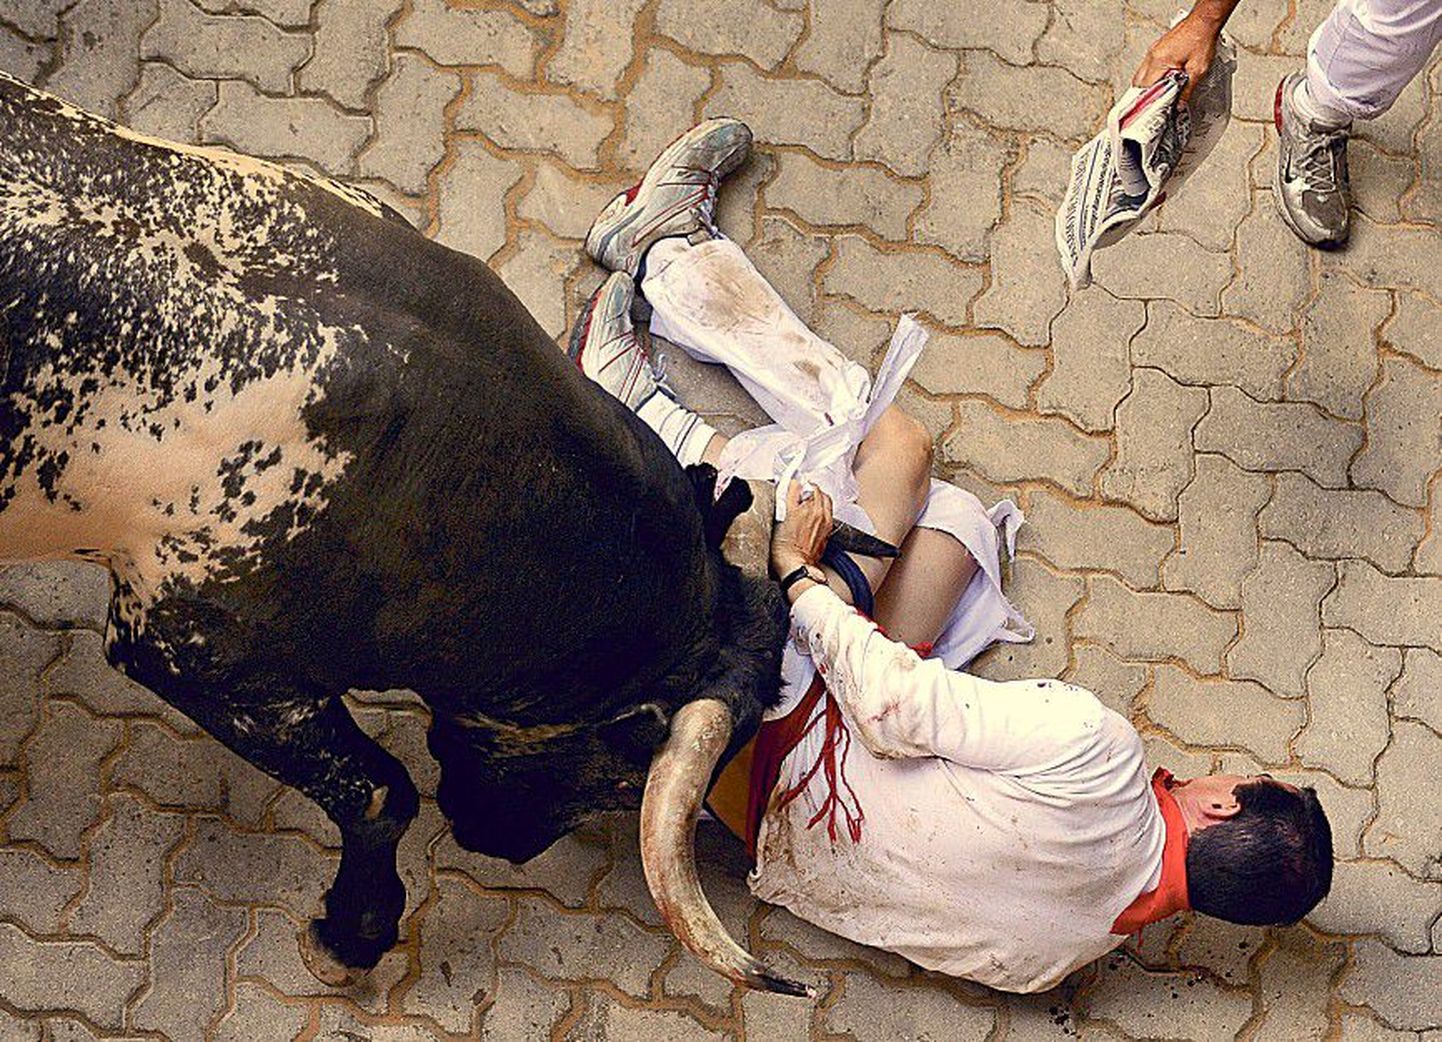 Участник фестиваля не сумел перехитрить быка и был вынужден признать себя побежденным.